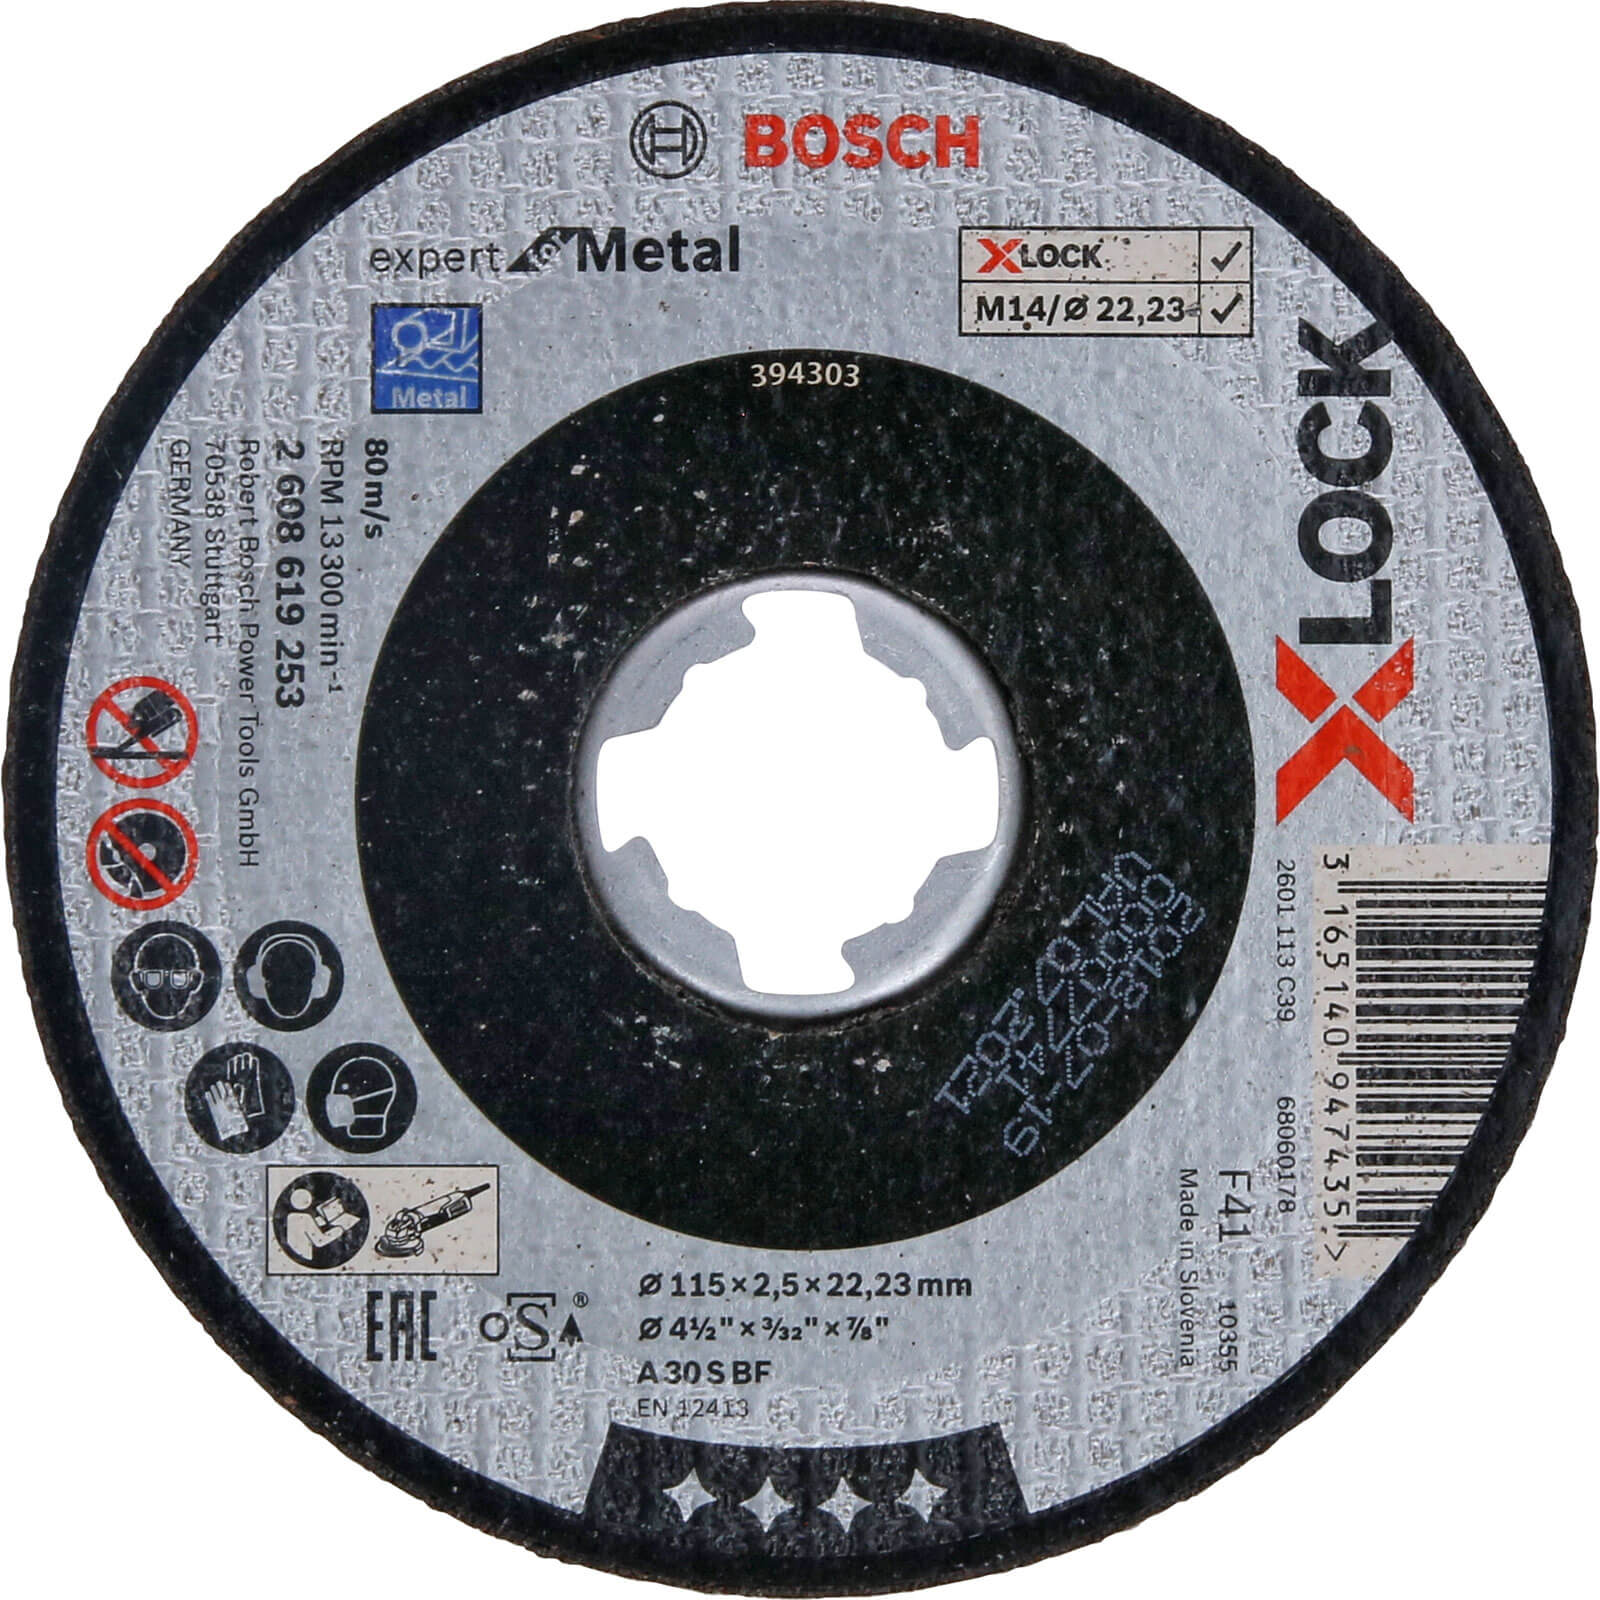 Photo of Bosch Expert X Lock Metal Cutting Disc 115mm 2.5mm 22mm